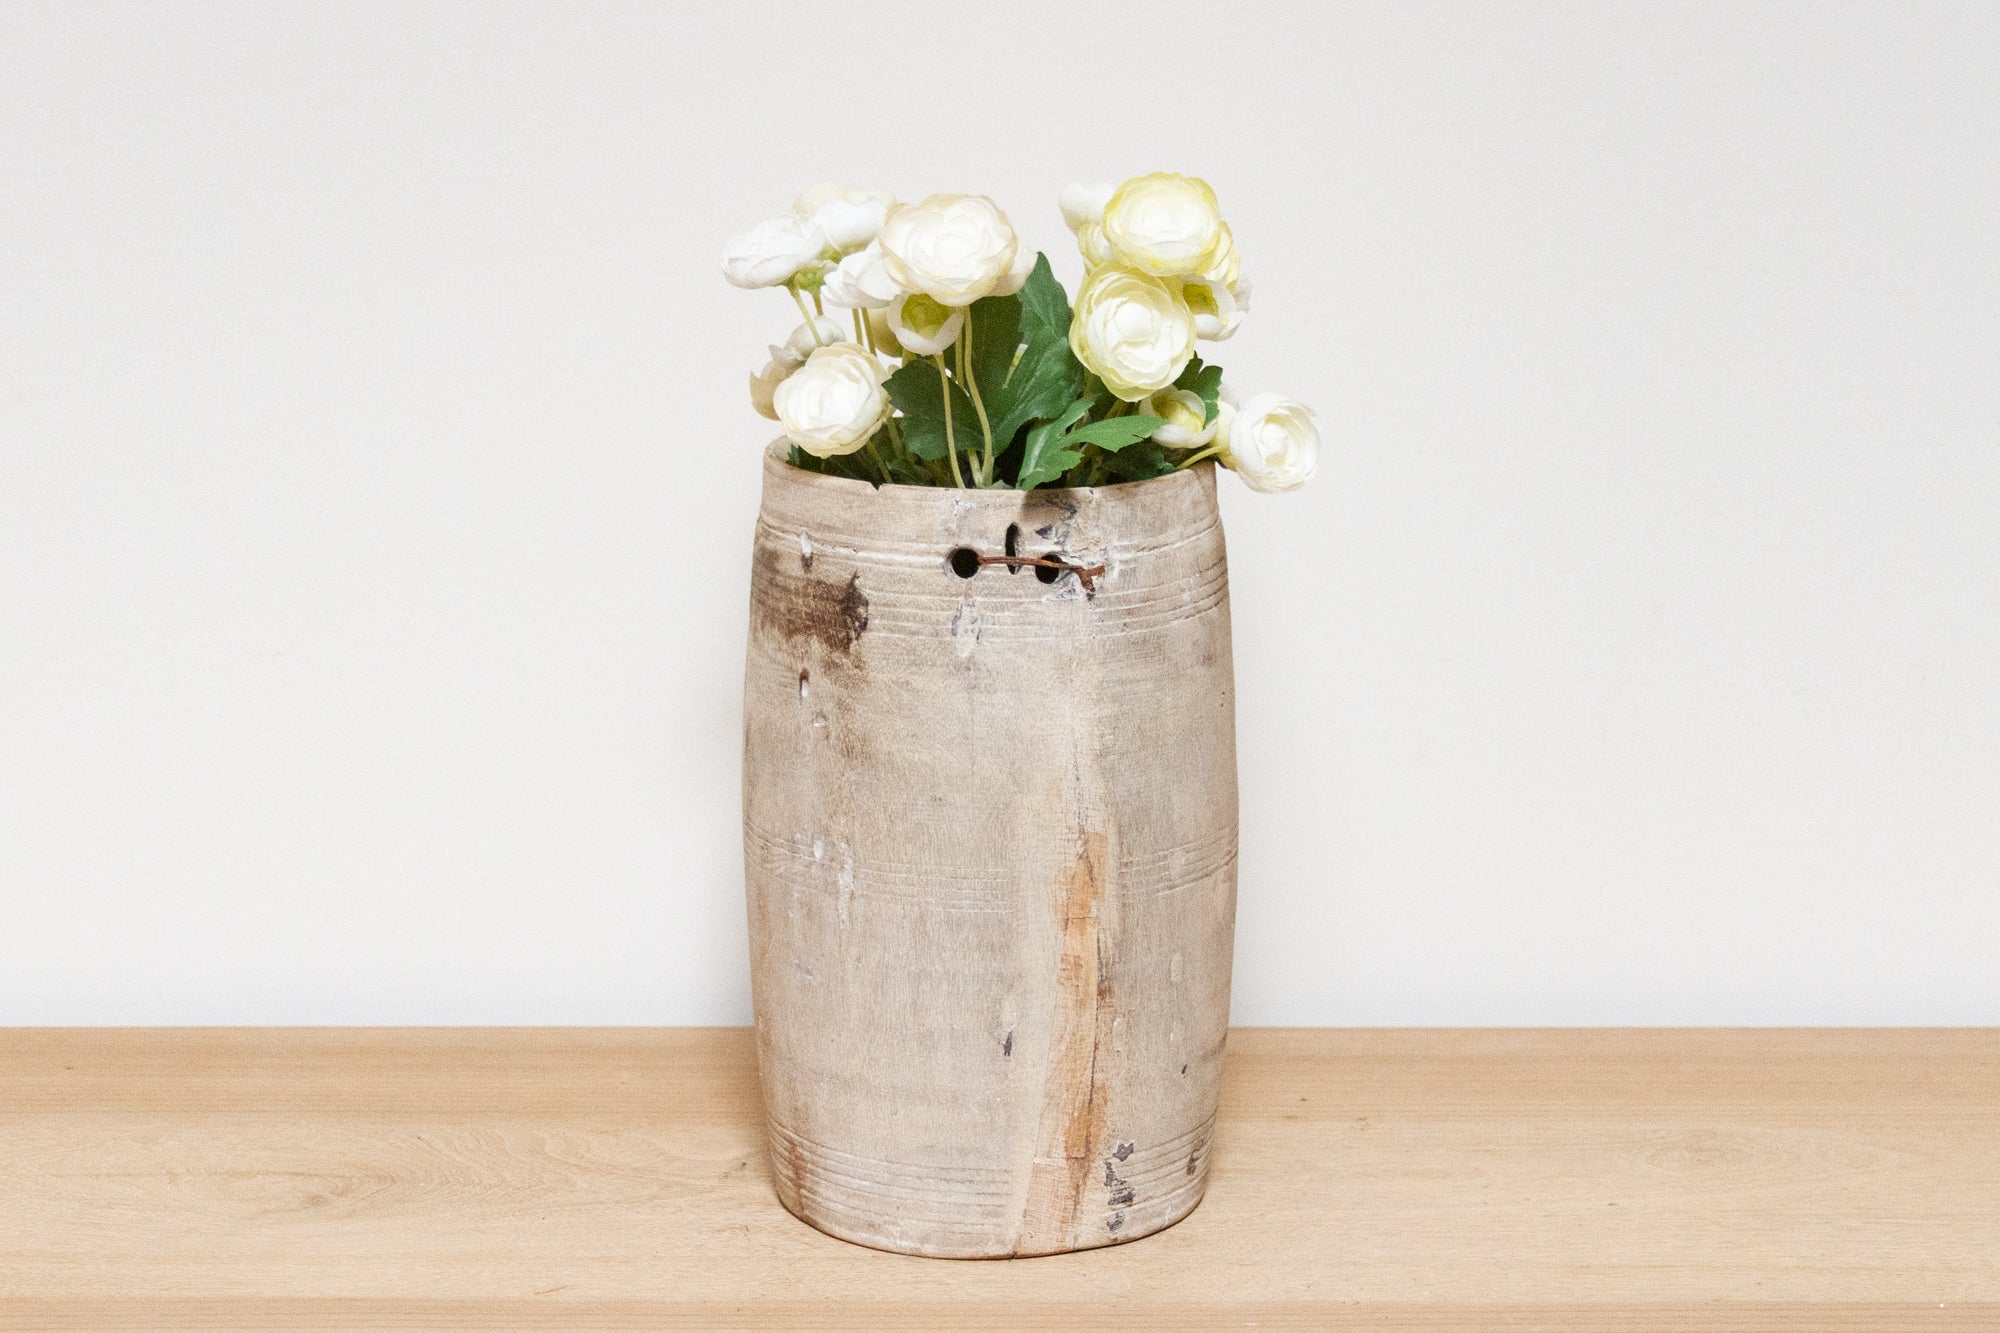 DE-COR | Ispirazione globale, Vaso primitivo in legno intagliato a mano - Pooran